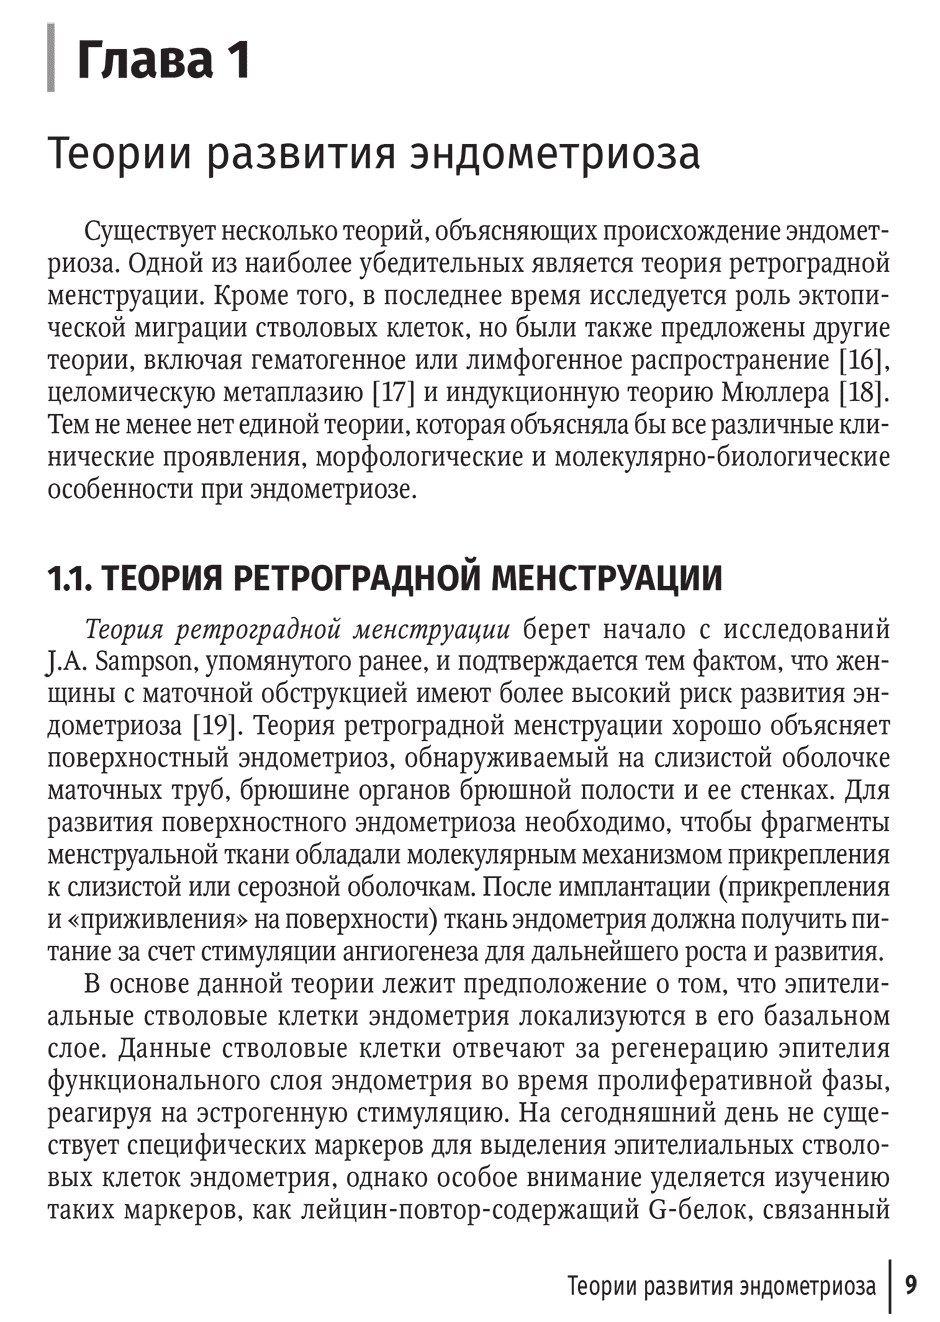 Пример страницы из книги "Эндометриоз и рак яичников: руководство для врачей" - Леваков С. А., Антипова Н. В.